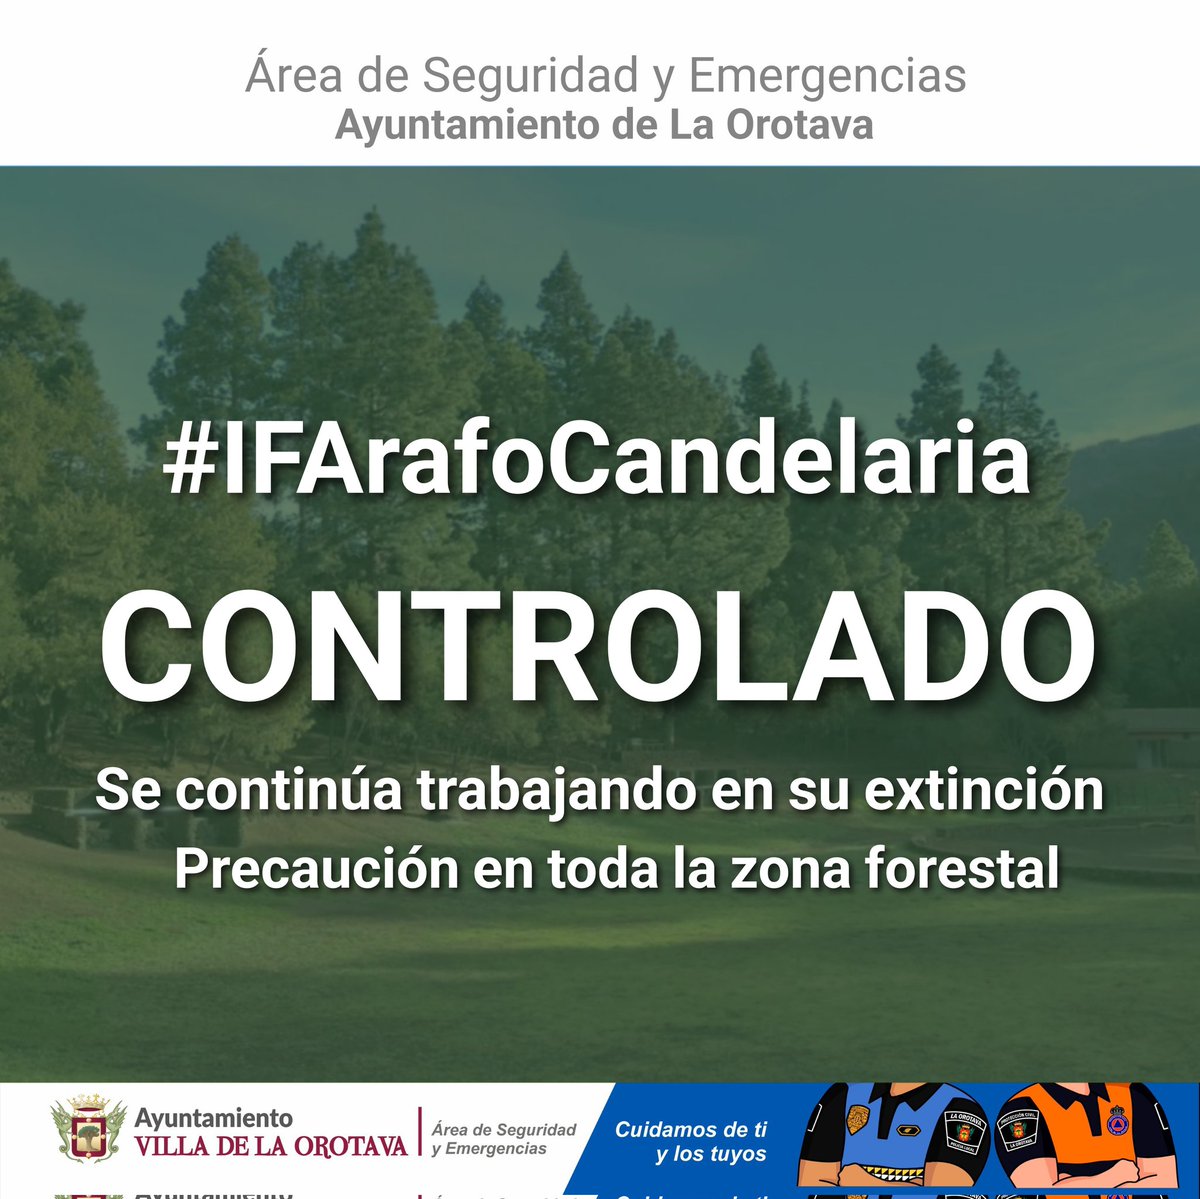 #CabildodeTenerife da por 𝗖𝗢𝗡𝗧𝗥𝗢𝗟𝗔𝗗𝗢 𝗲𝗹 #𝗜𝗙𝗔𝗿𝗮𝗳𝗼𝗖𝗮𝗻𝗱𝗲𝗹𝗮𝗿𝗶𝗮 Se mantiene la 𝗽𝗿𝗼𝗵𝗶𝗯𝗶𝗰𝗶ó𝗻 𝗱𝗲𝗹 𝘂𝘀𝗼 𝗱𝗲𝗹 𝗳𝘂𝗲𝗴𝗼  dentro de la Corona Forestal de los municipios afectados por el incendio. Más info ⬇️
diariodetenerife.info/cabildo-contro…